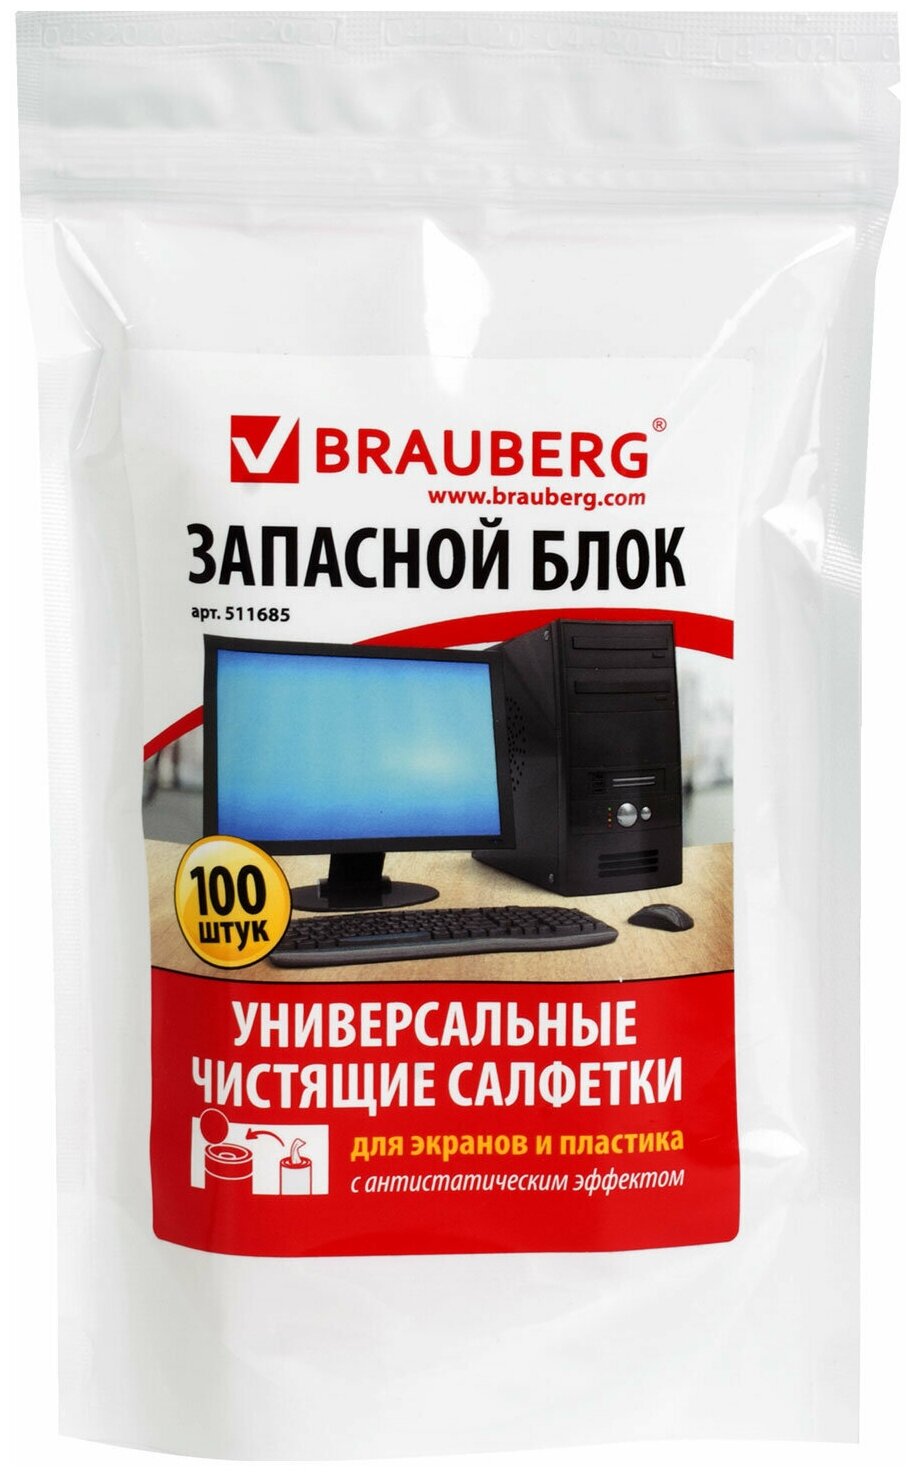 Салфетки для экранов всех типов и пластика (запасной блок) BRAUBERG, пакет 100 шт, влажные, 511685